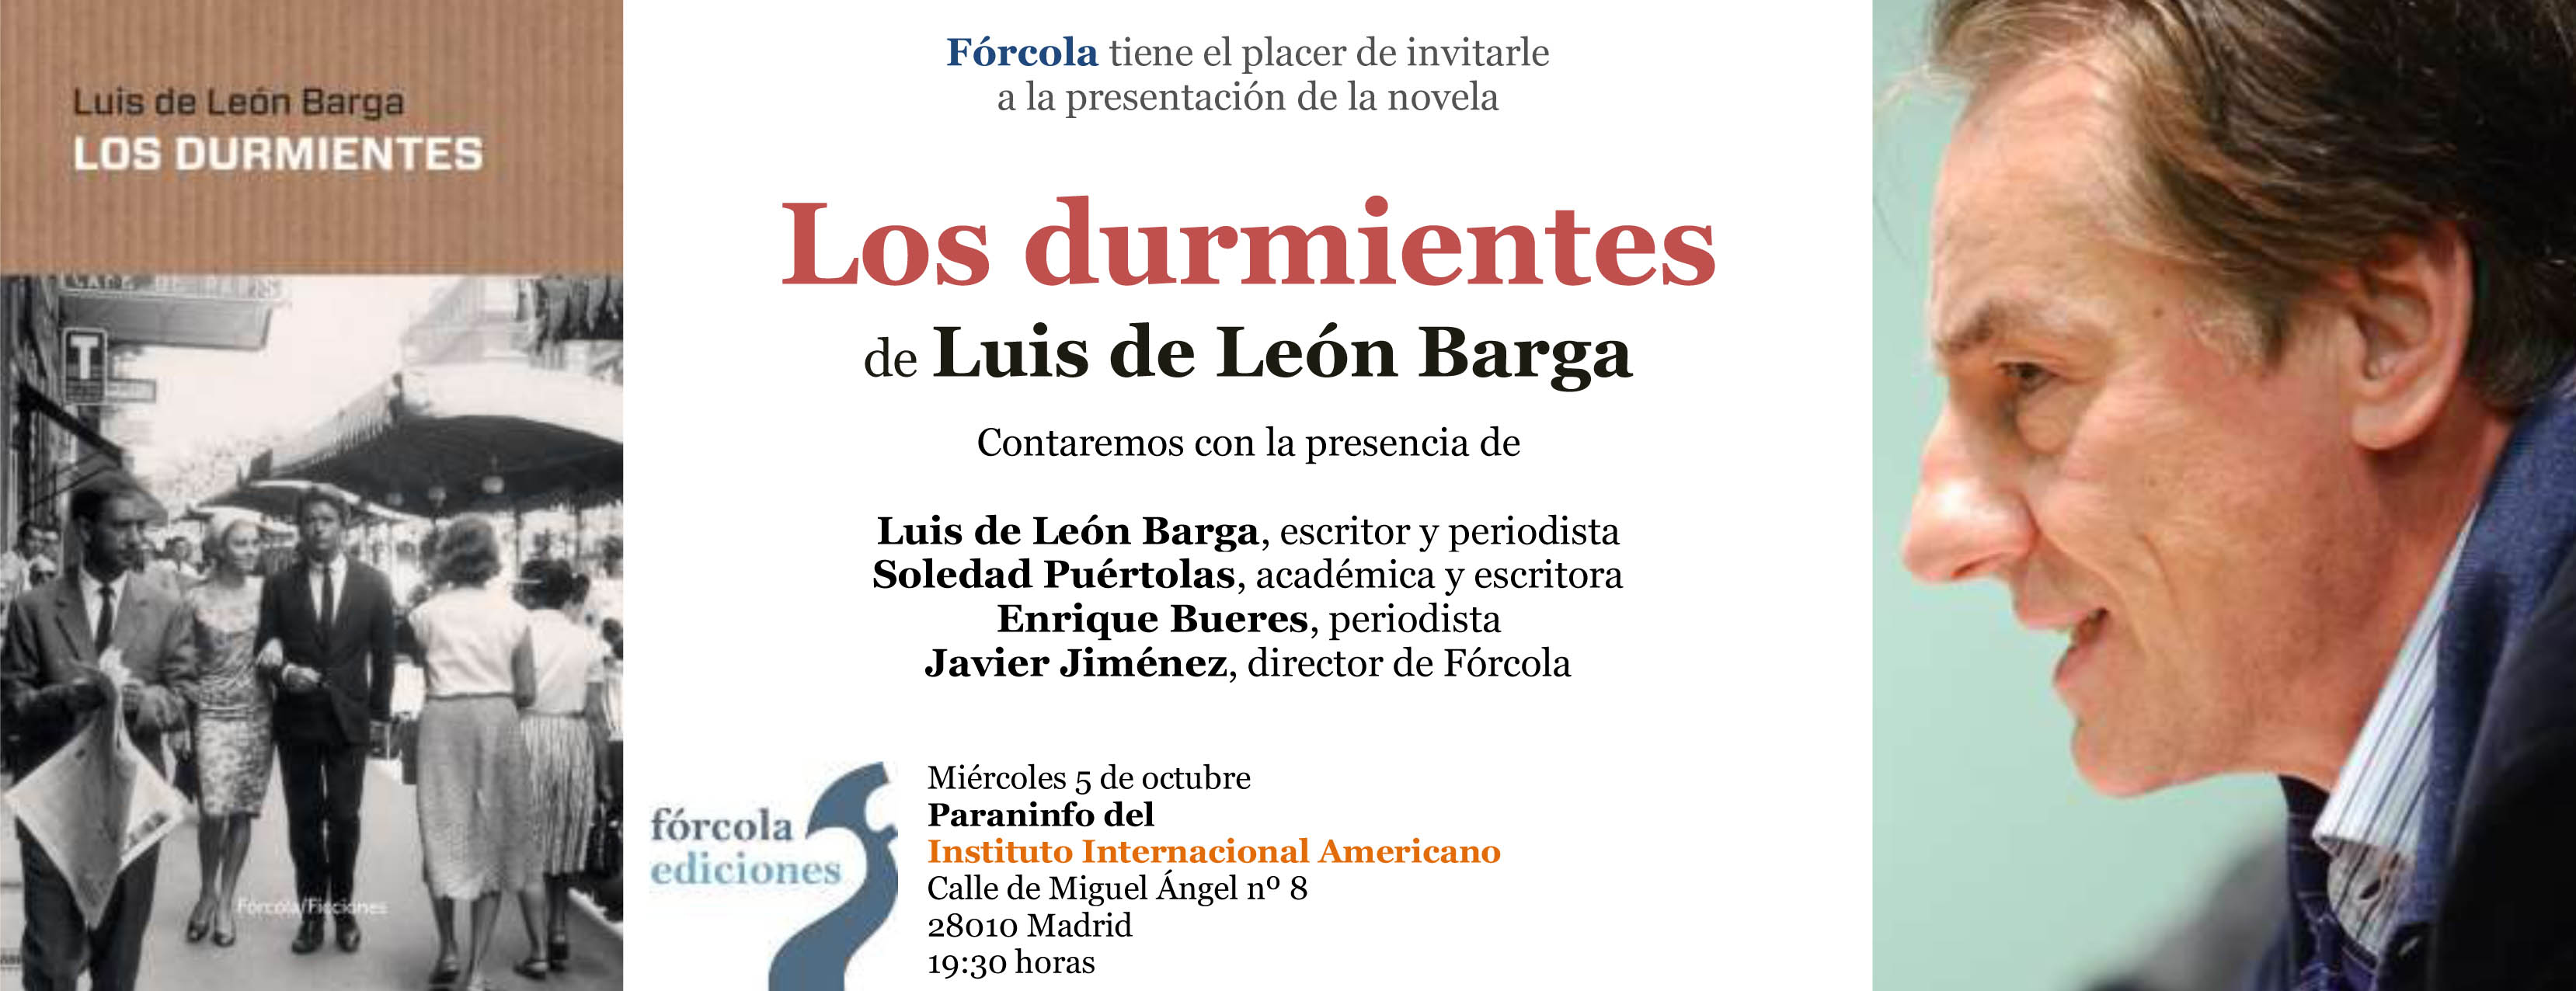 Invitacion_Los-durmientes_LuisLeonBarga